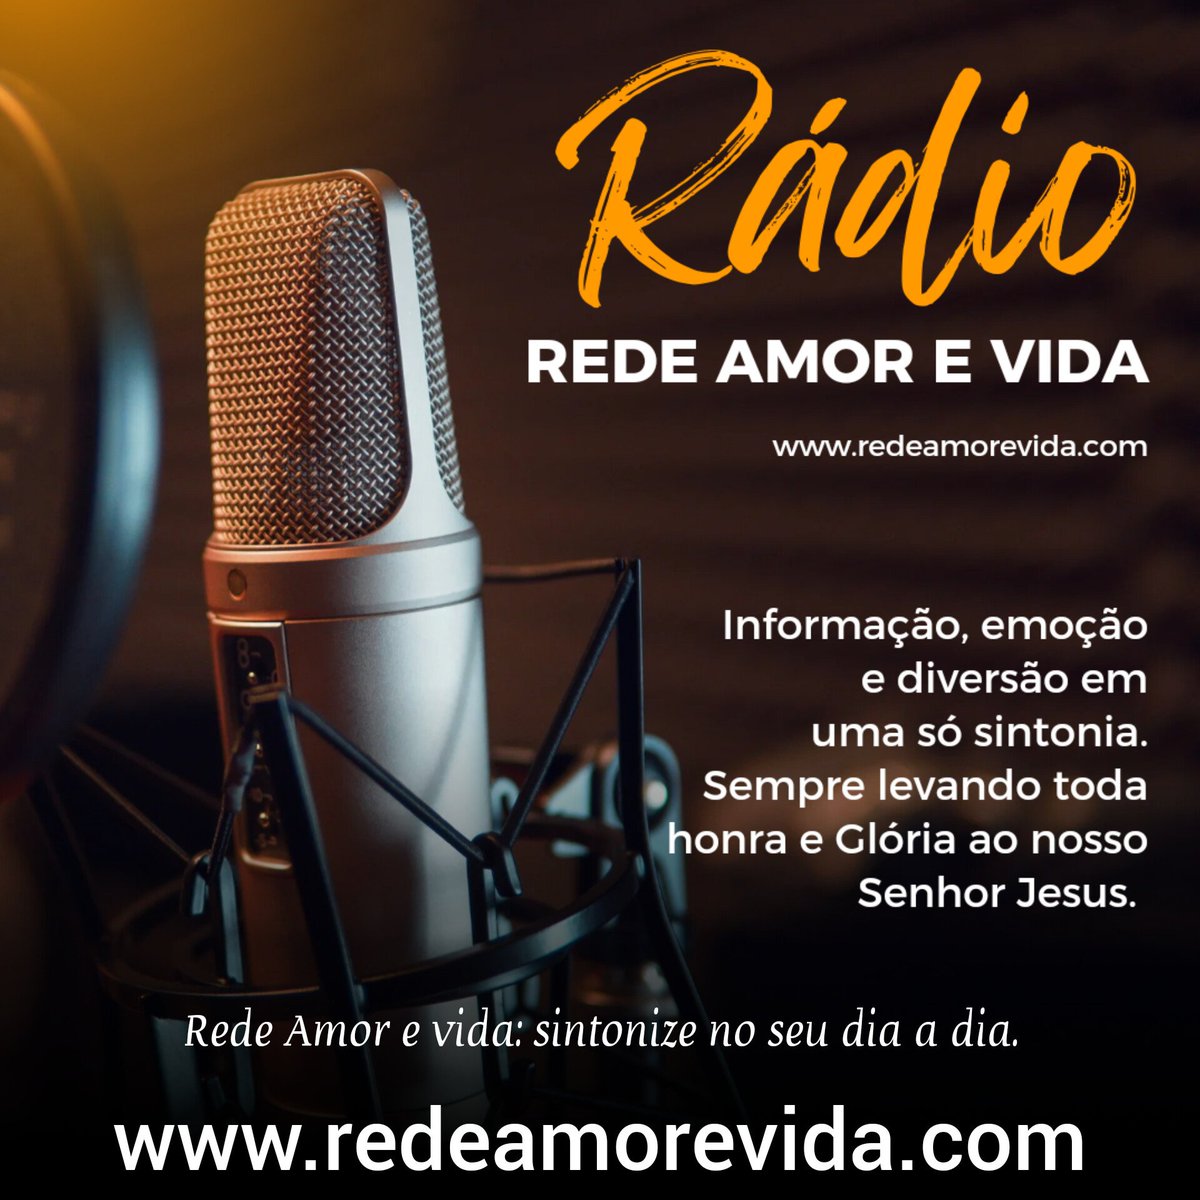 Rede Amor e Vida levando o melhor da música gospel. redeamorevida.com  #fozdoiguacu #musicagospel #redeamorevida